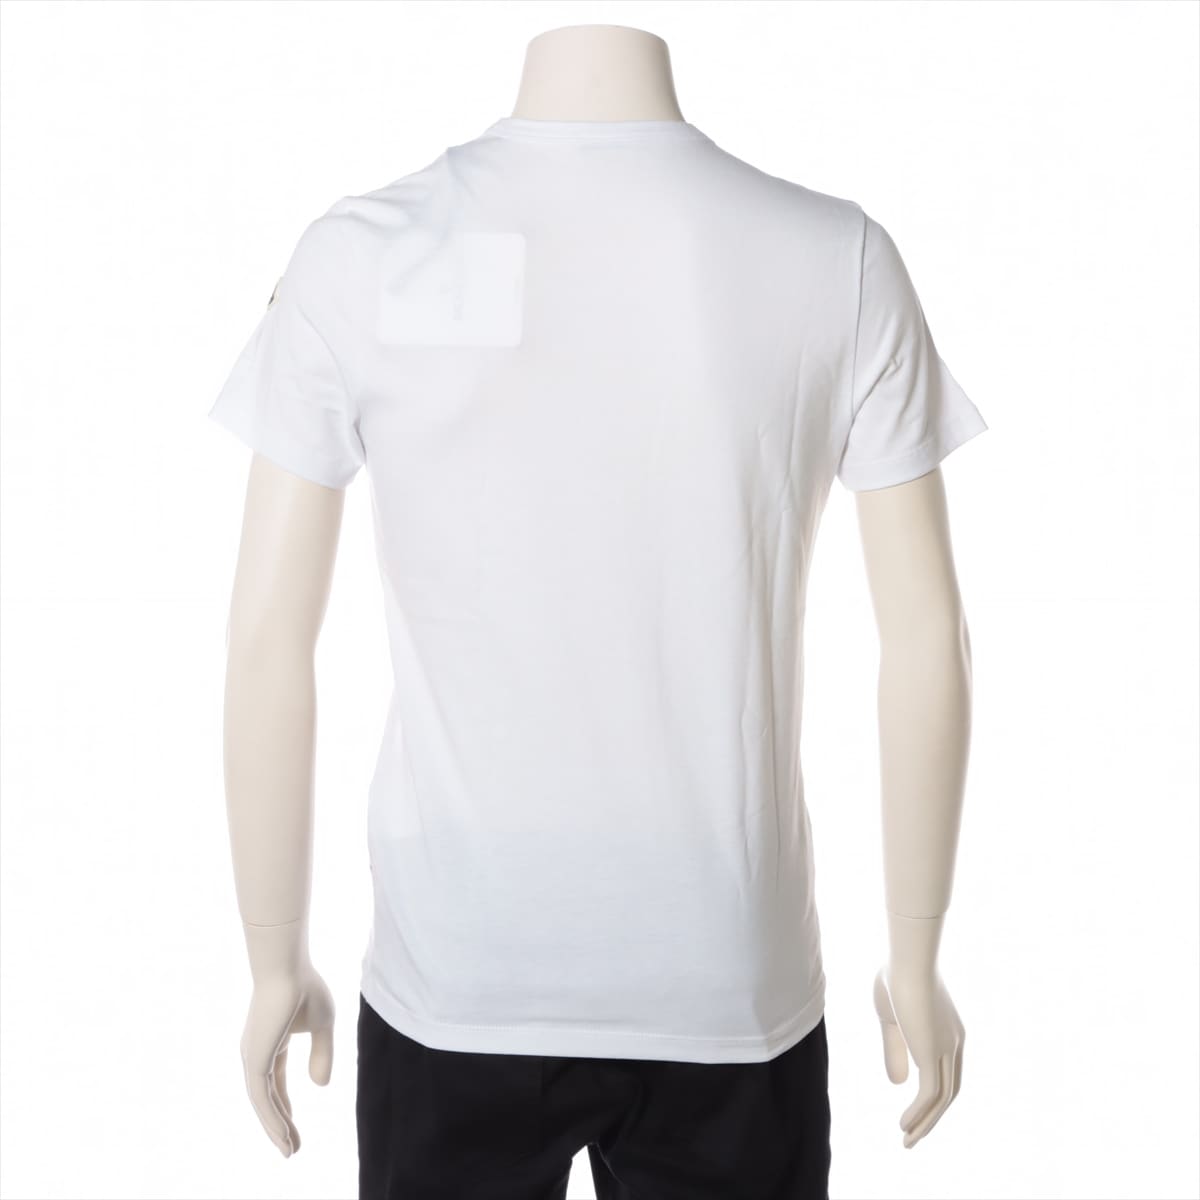 Moncler 18 years Cotton T-shirt XS Men's White  E20918048250